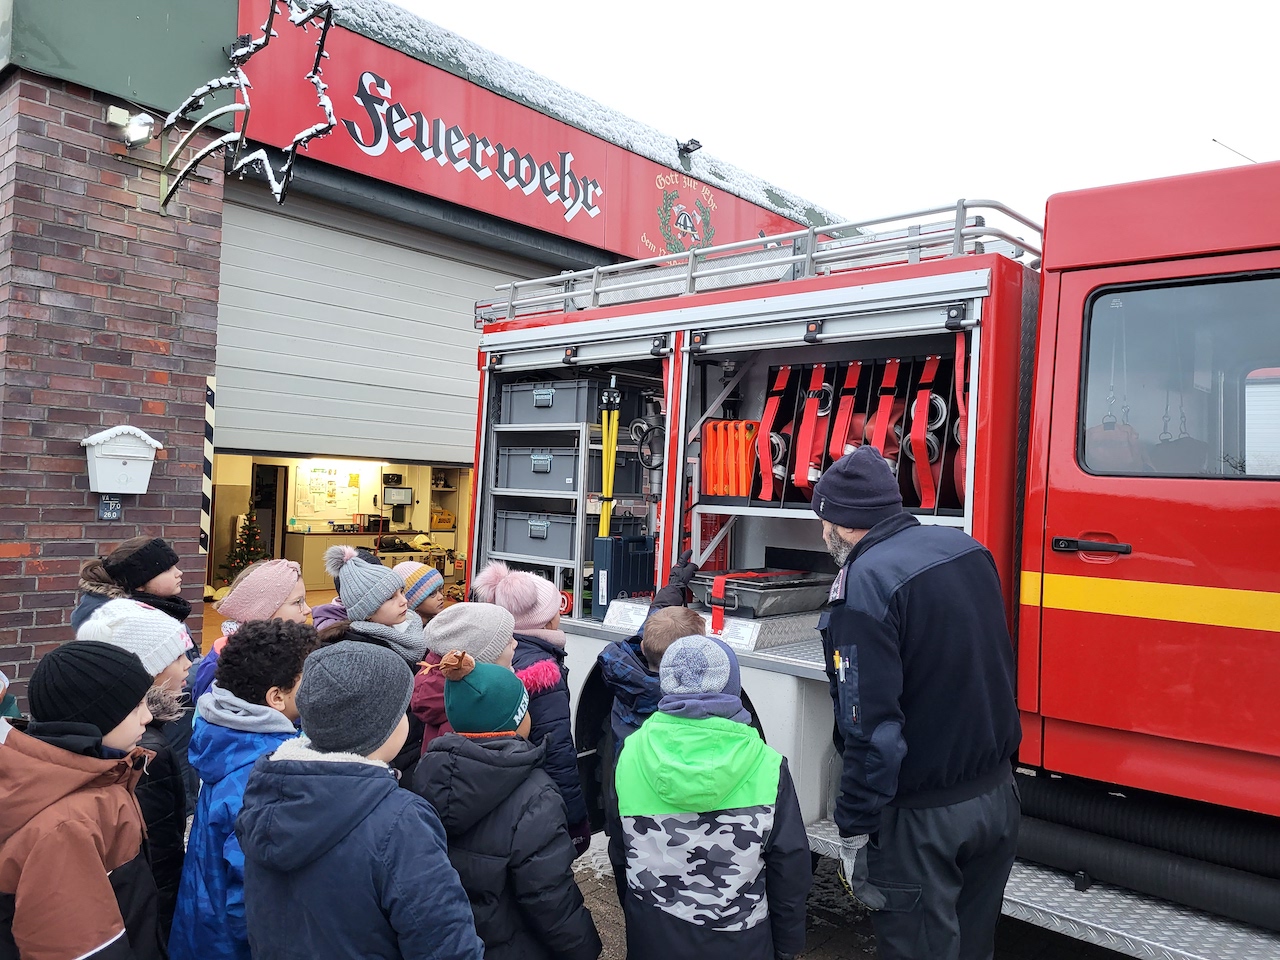 Unser Besuch bei der freiwilligen Feuerwehr in Lübeck